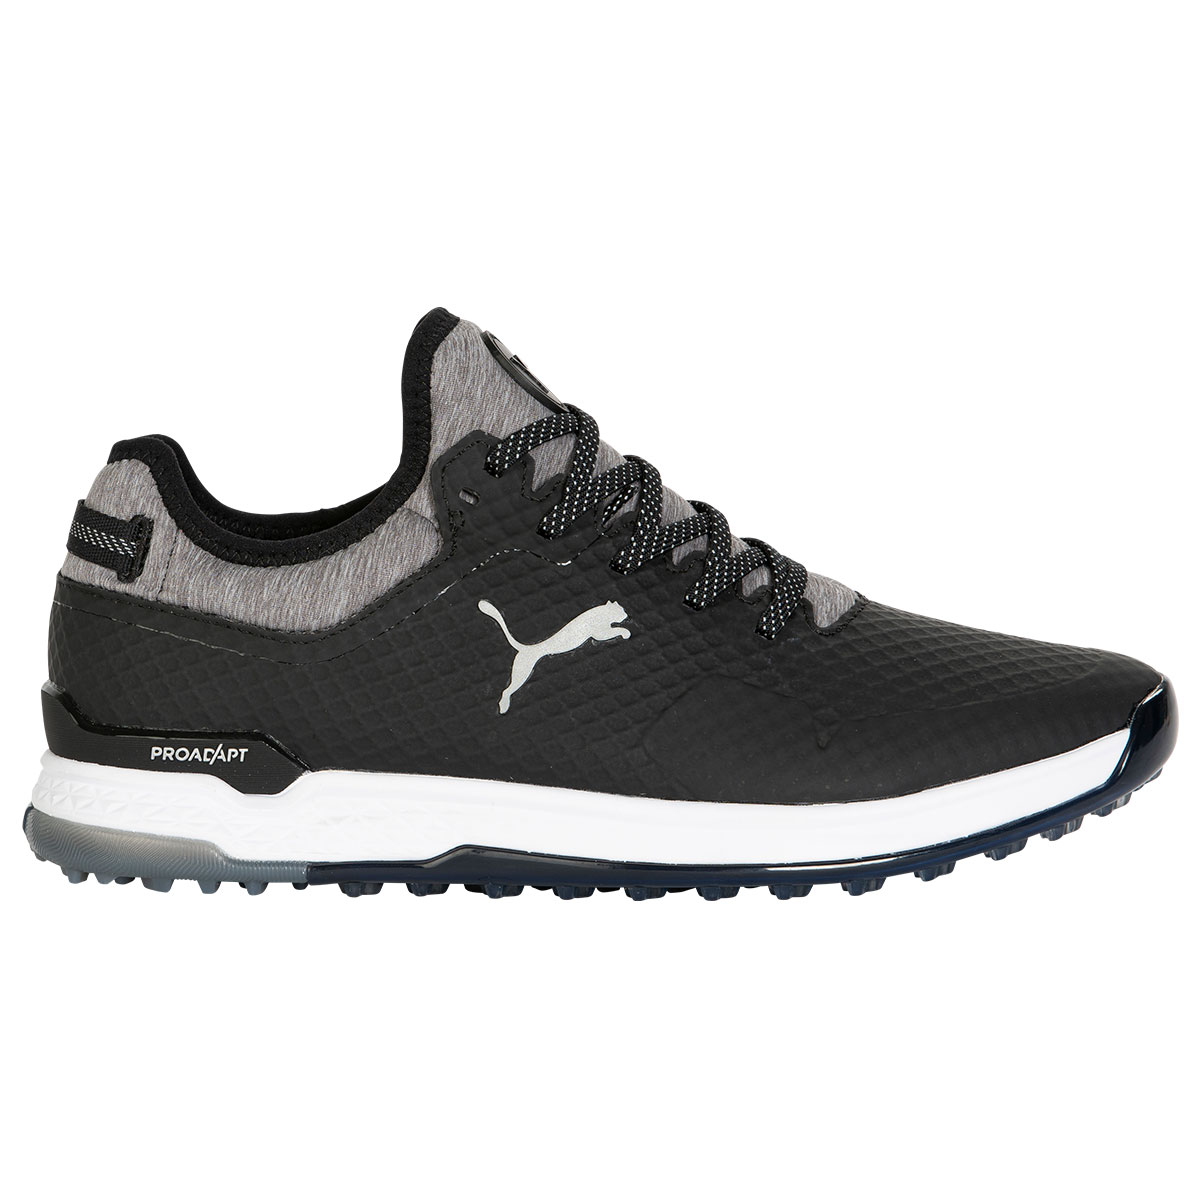 PUMA Men's PROADAPT ALPHACAT Waterproof Spikeless Golf Shoes from ...